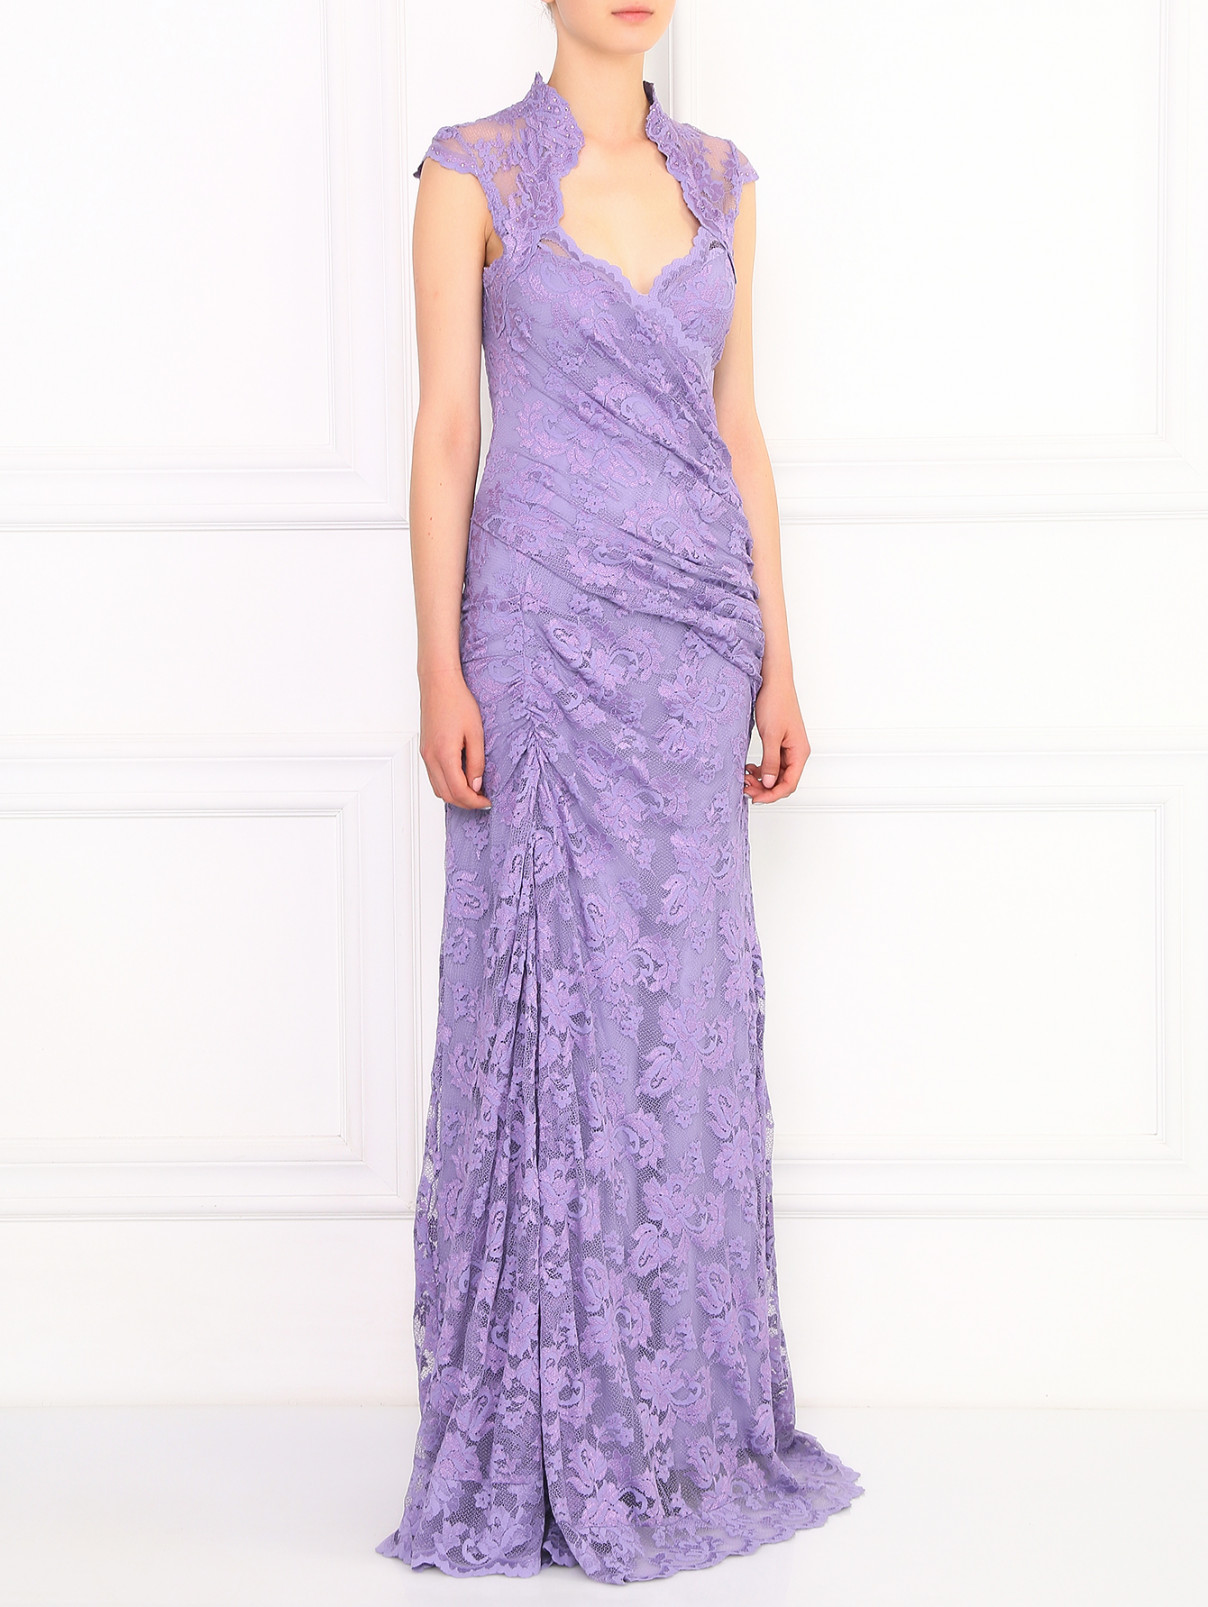 Платье-макси из кружева декорированное стразами Olvi's  –  Модель Общий вид  – Цвет:  Фиолетовый